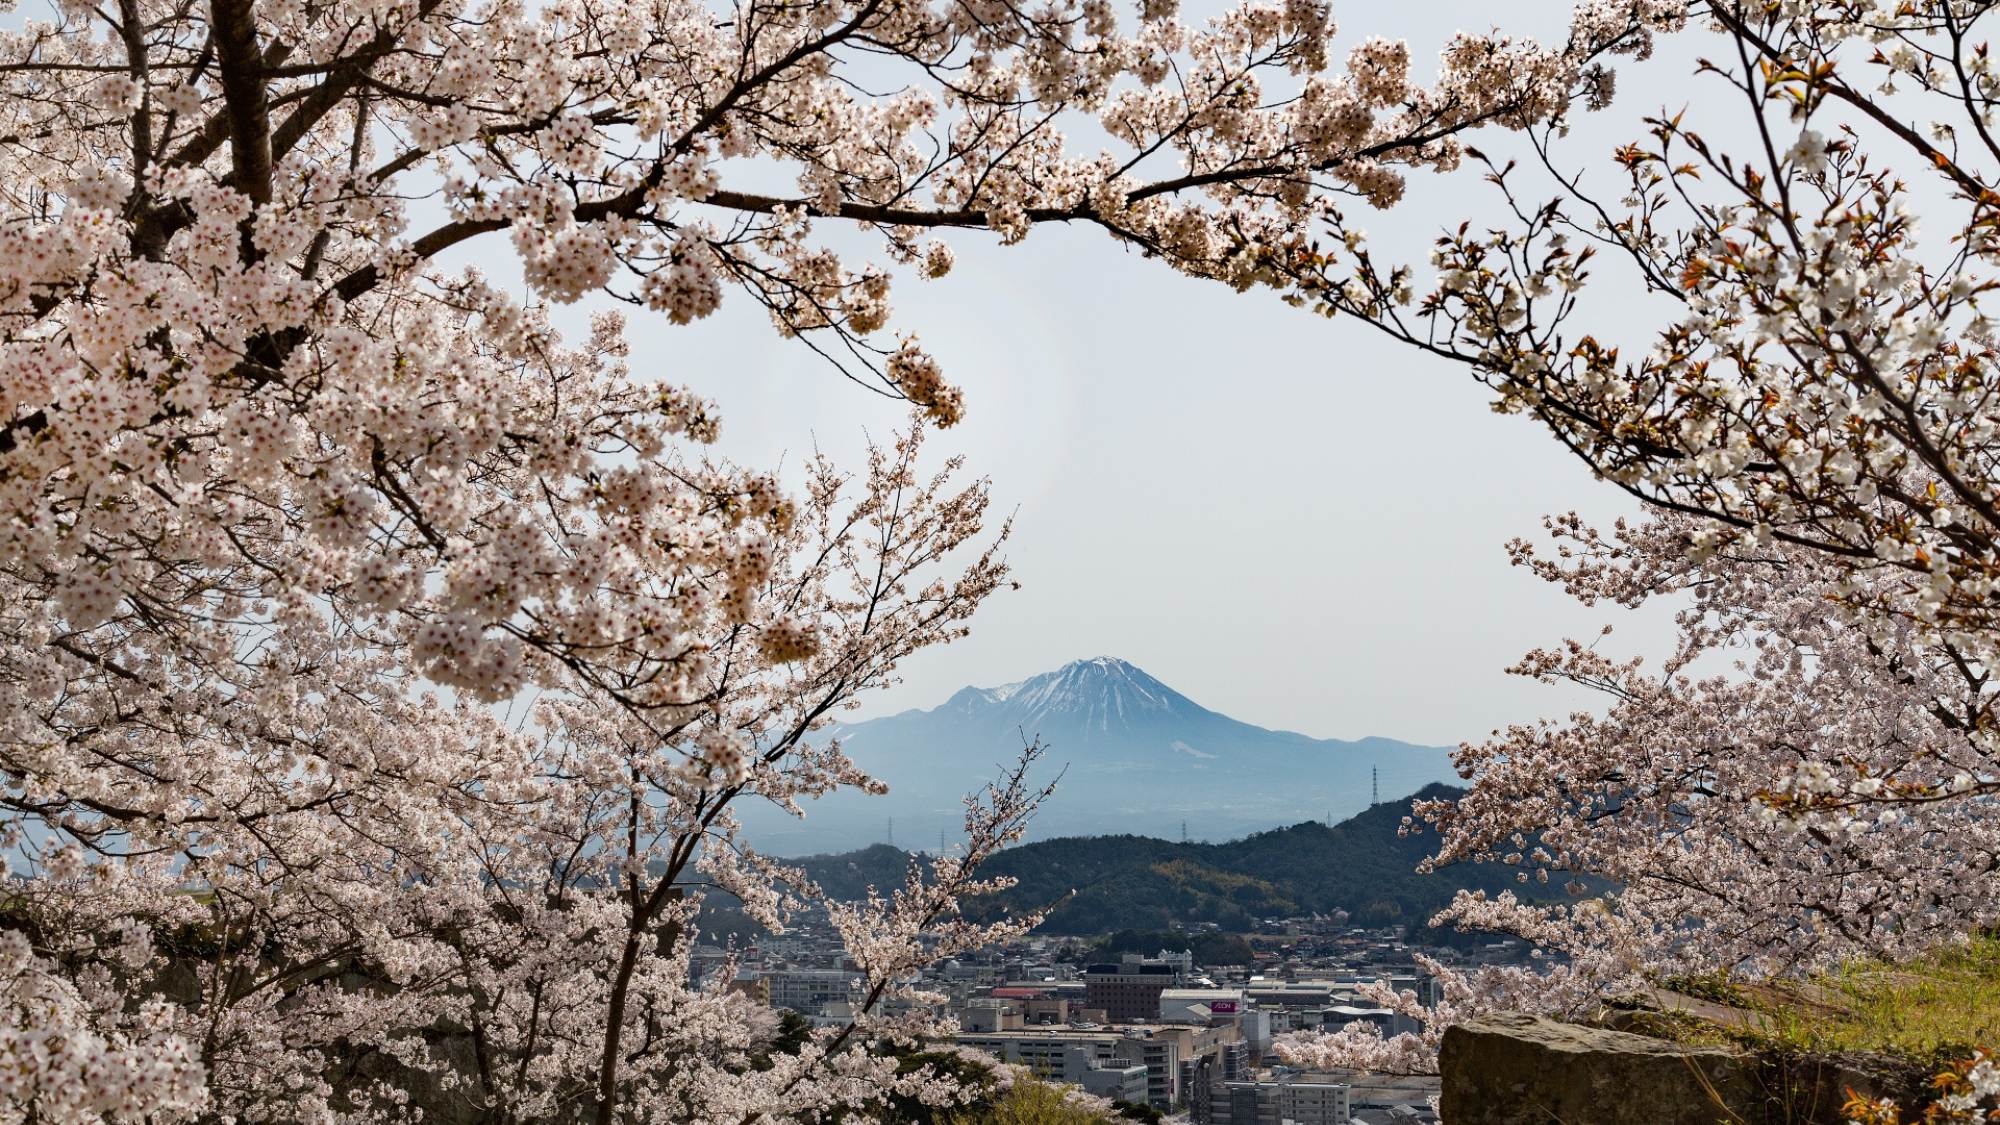 桜と秀峰大山のコントラストをお楽しみ下さい。